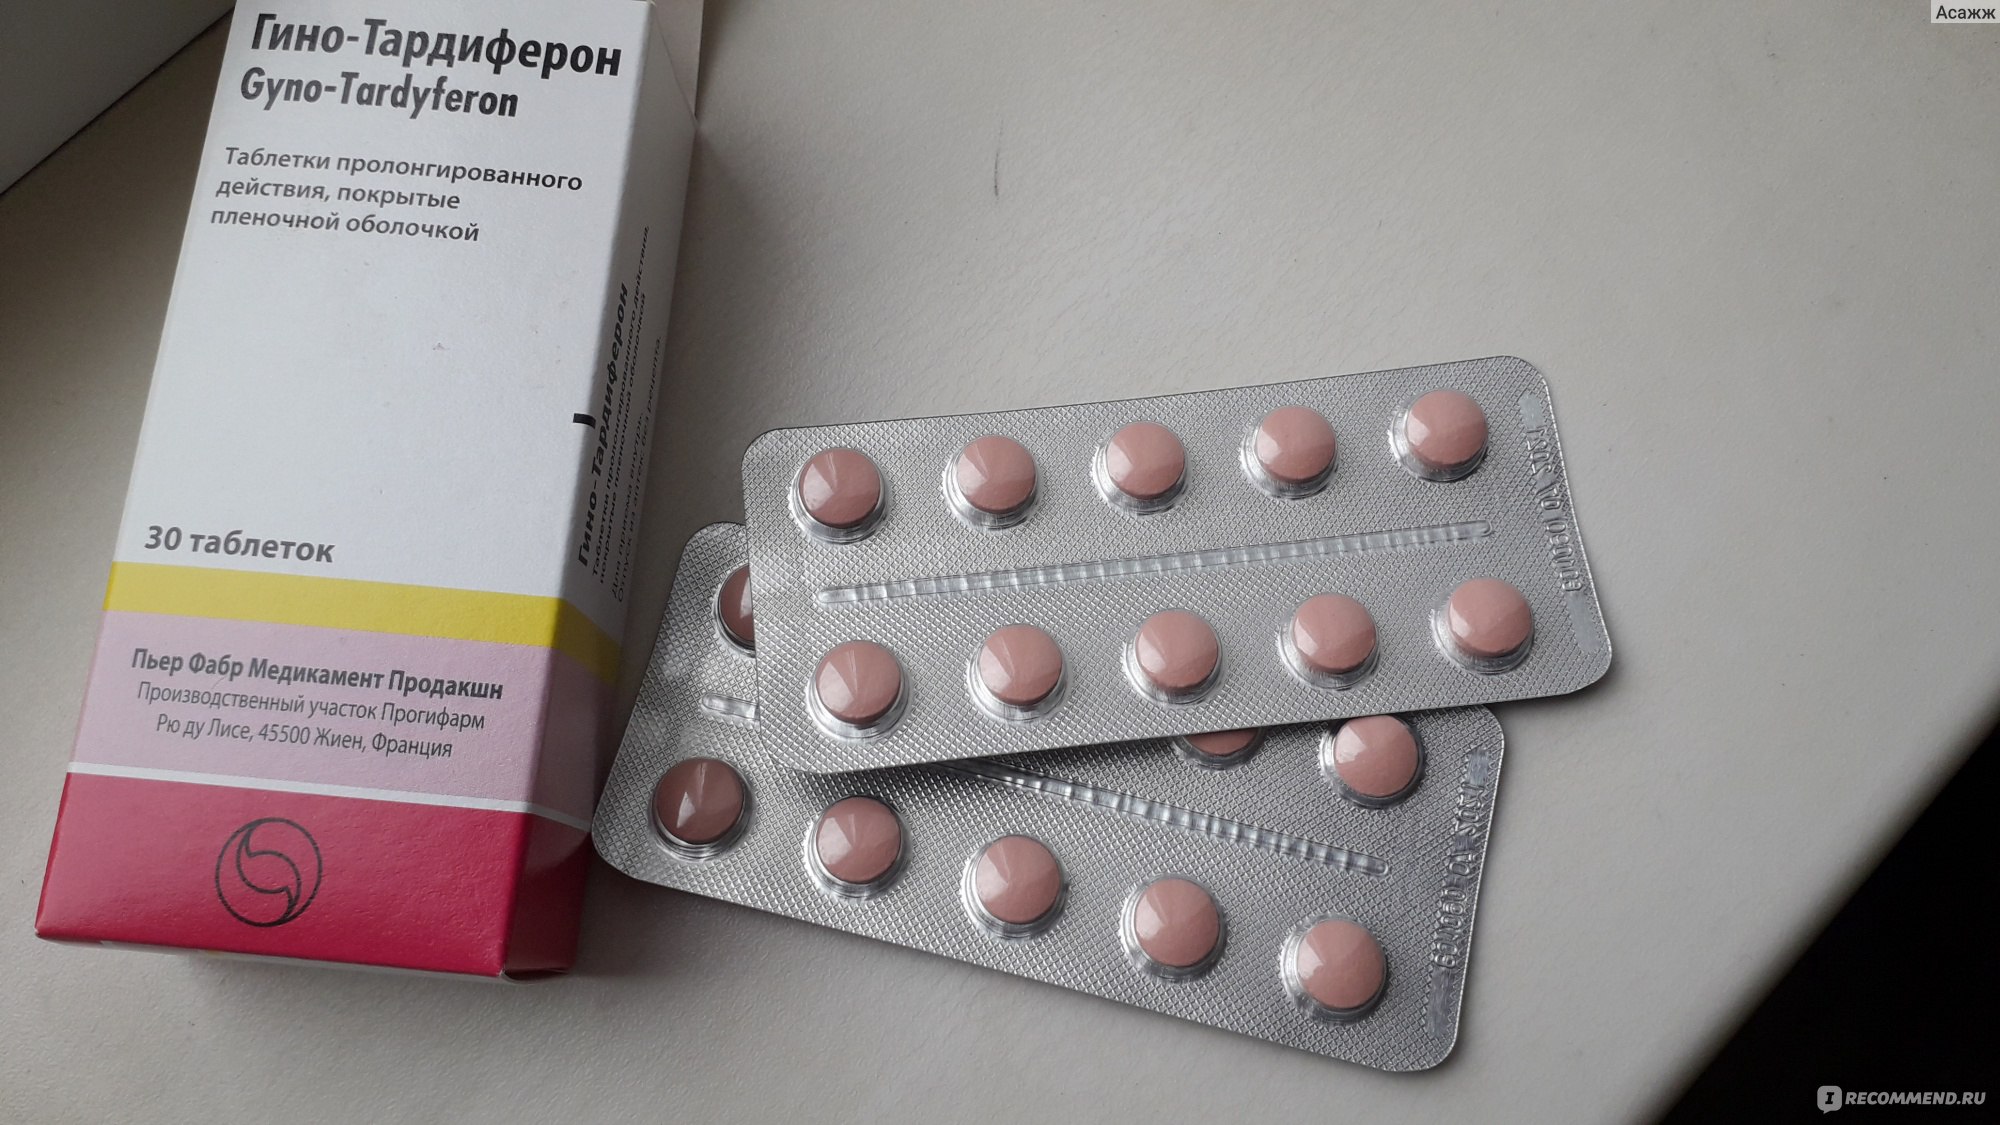 Таблетки Гино-тардиферон антианемический препарат - «Как я встала на .